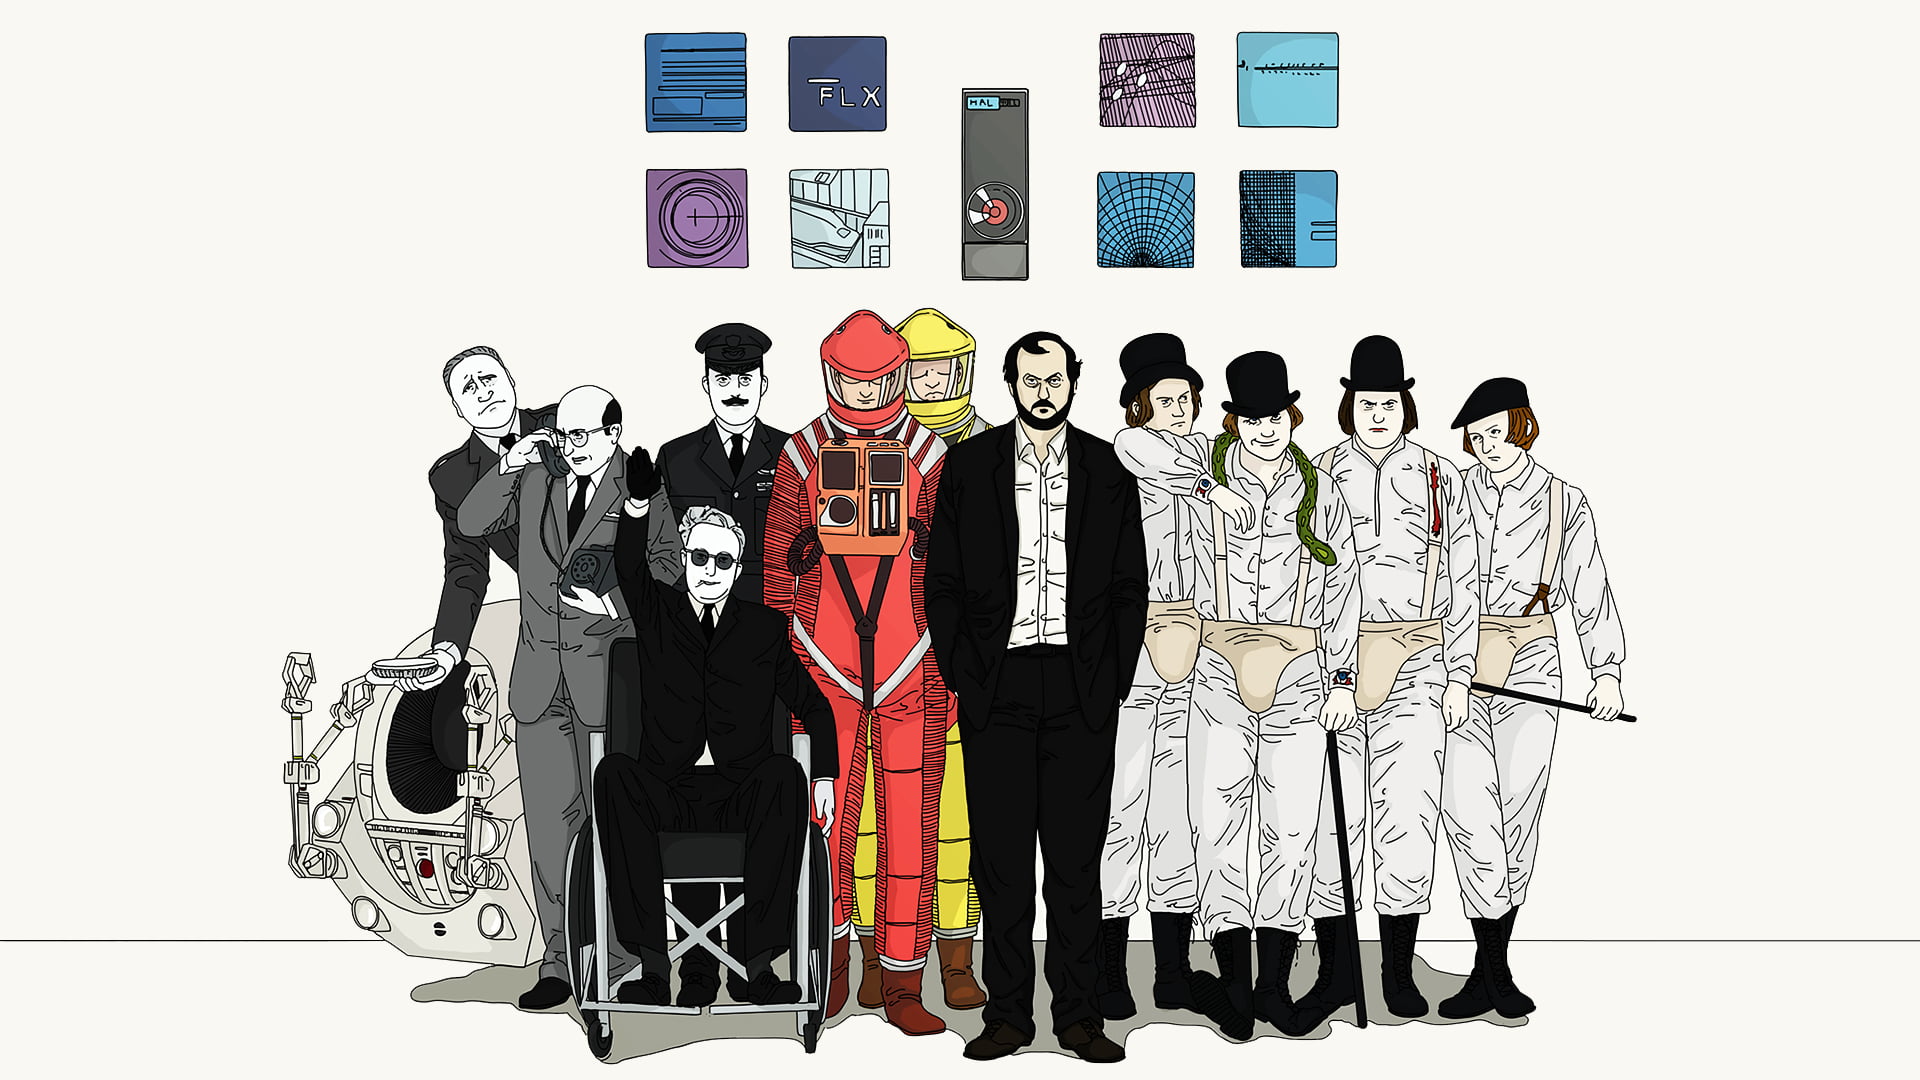 illustration of peoples, 2001: A Space Odyssey, A Clockwork Orange, Dr. Strangelove, HAL 9000